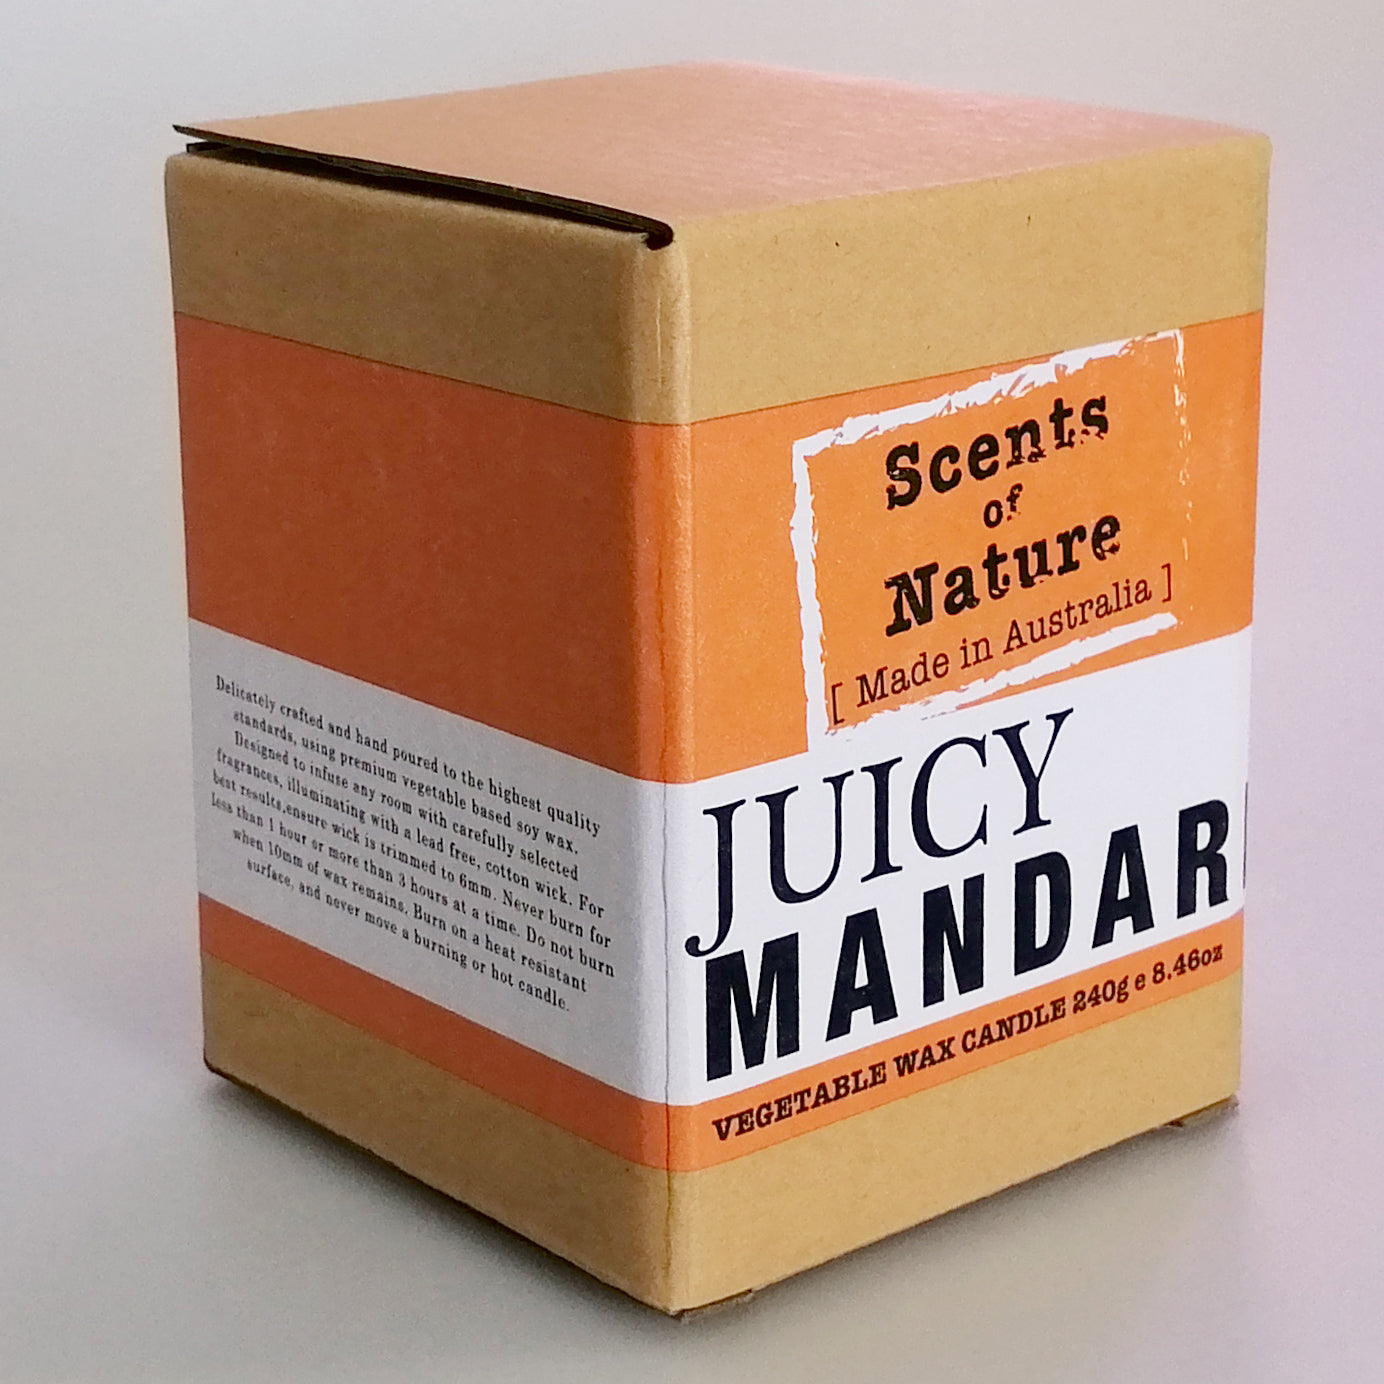 Vegetable Wax Candle - Juicy Mandarin - 240g